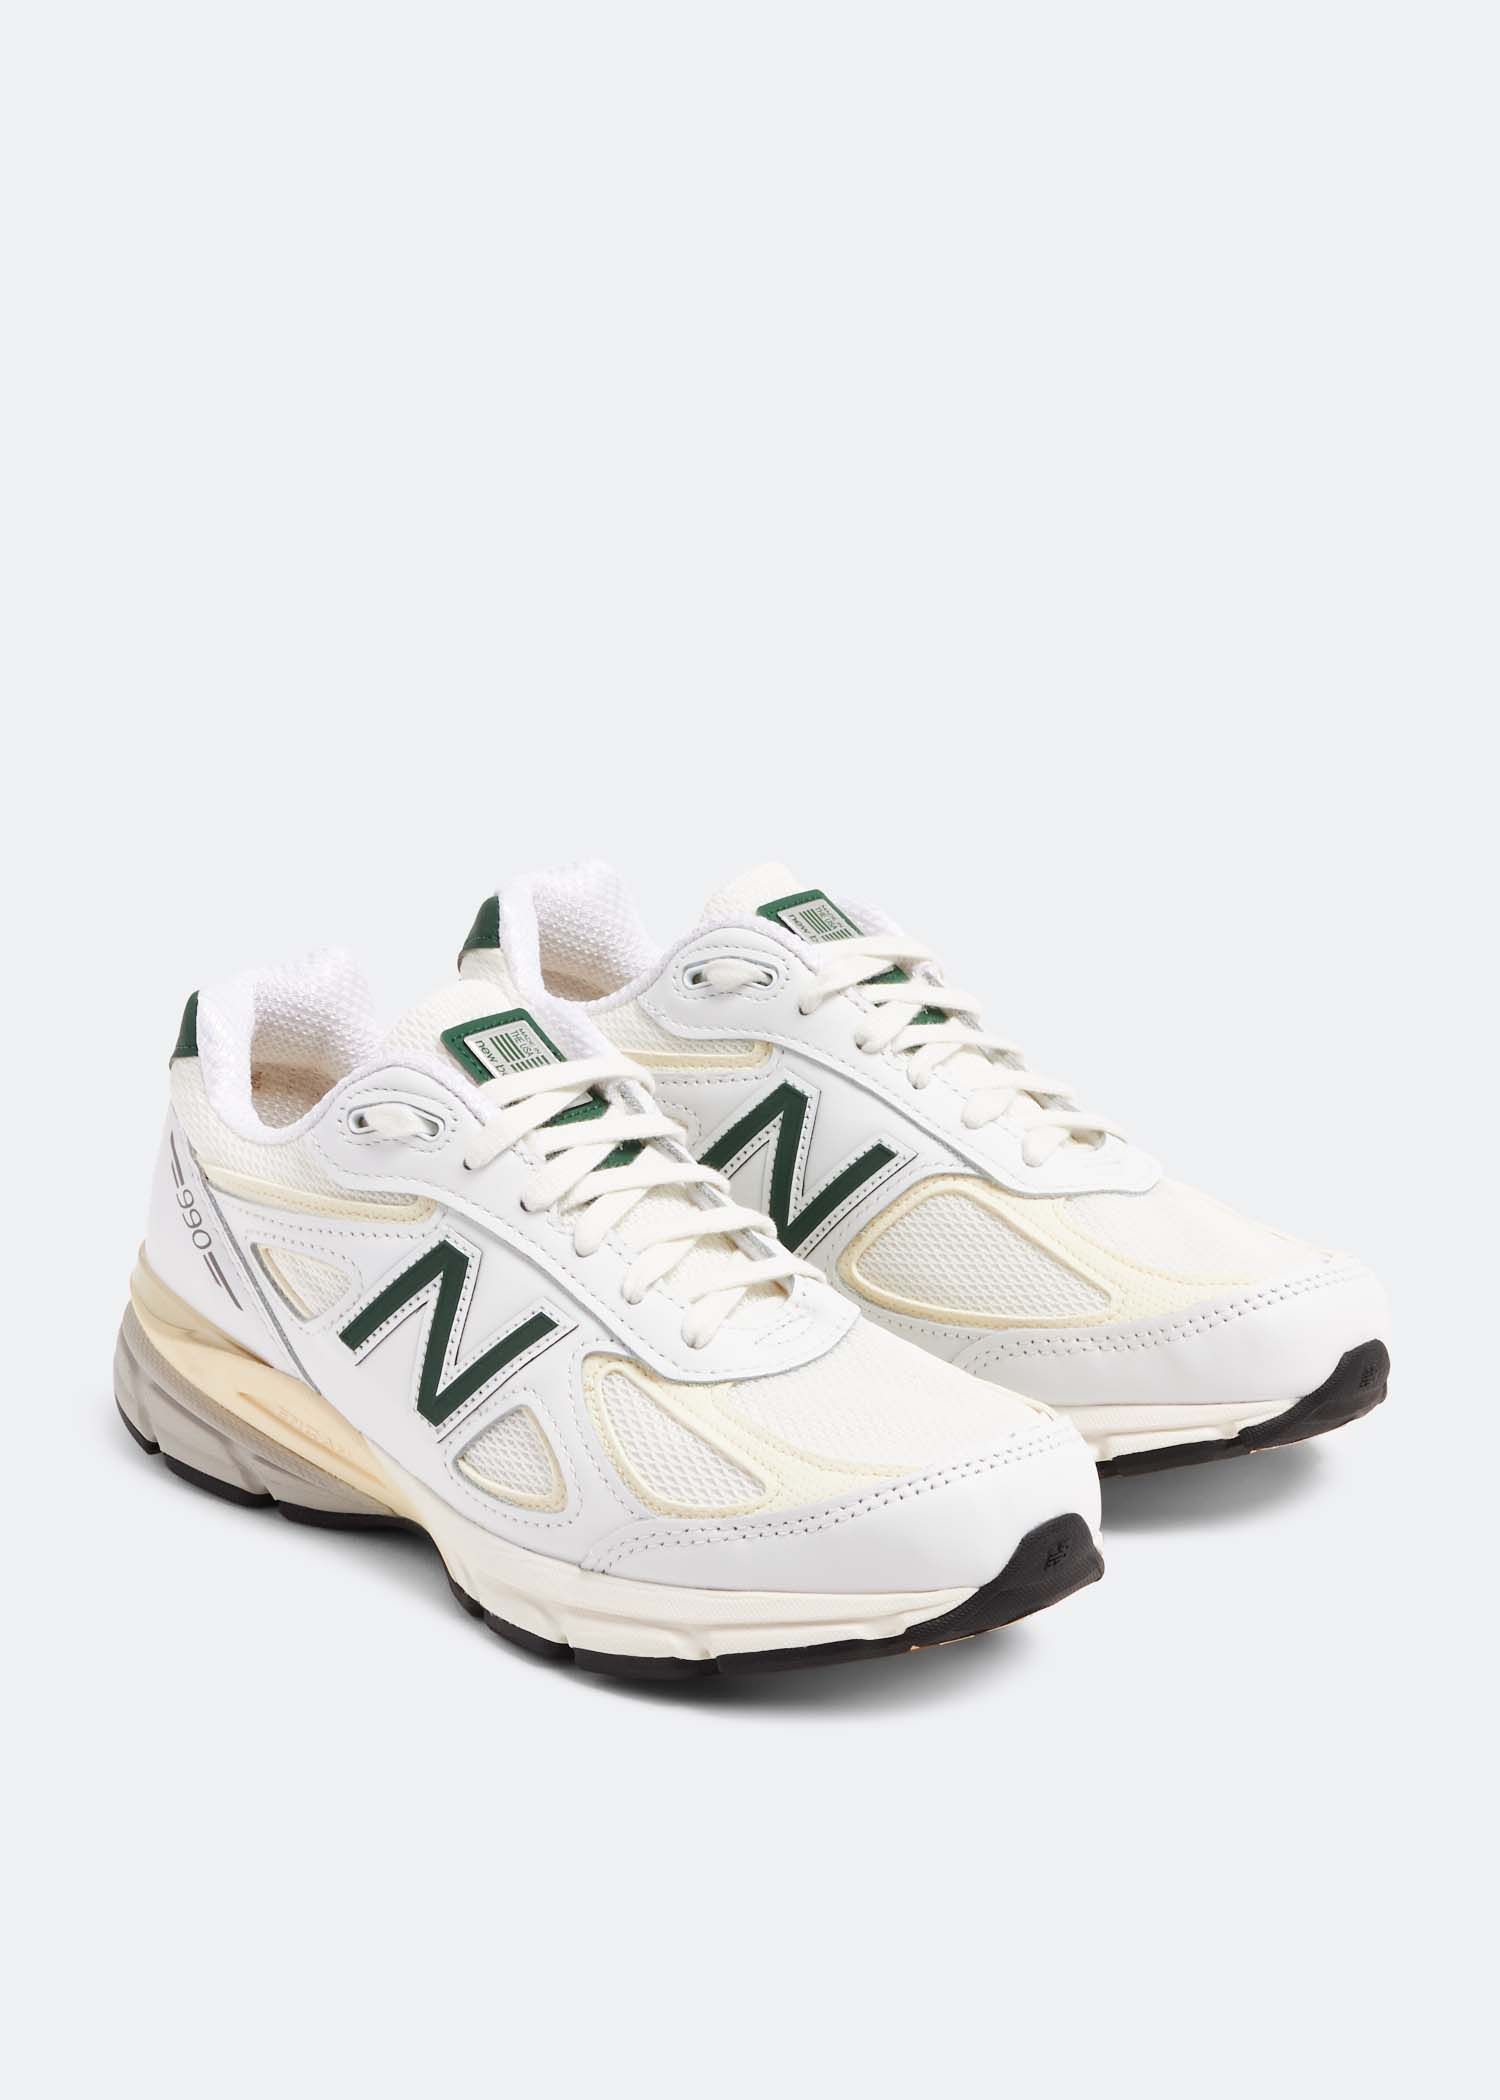 New Balance V4 White/Green